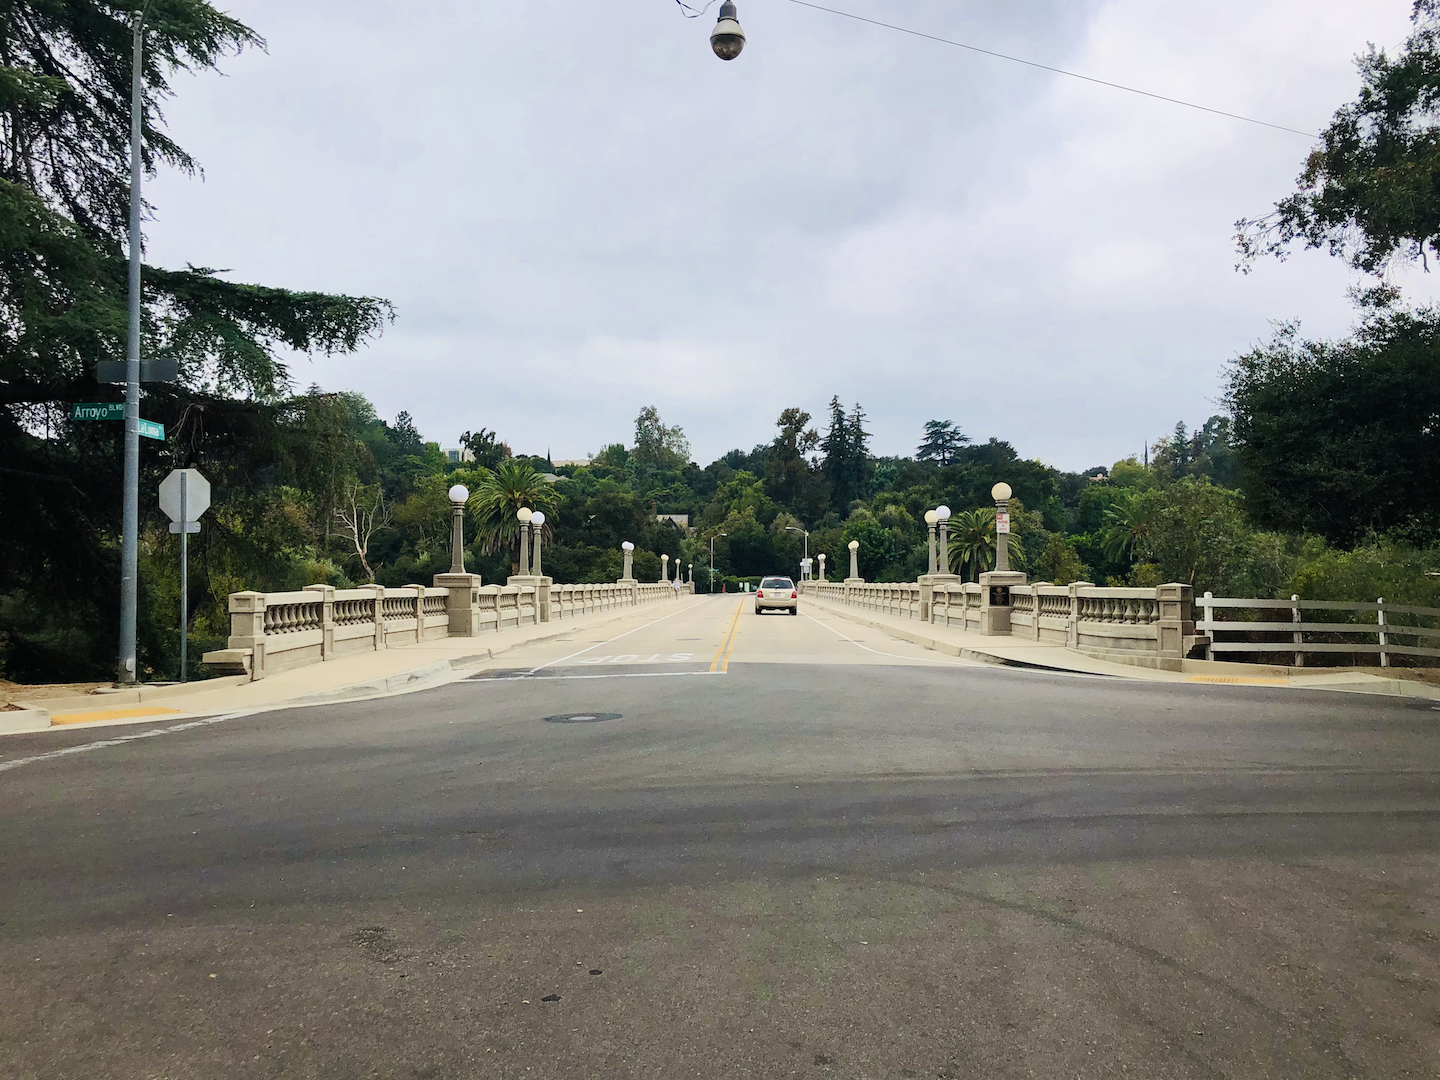 La Loma Bridge